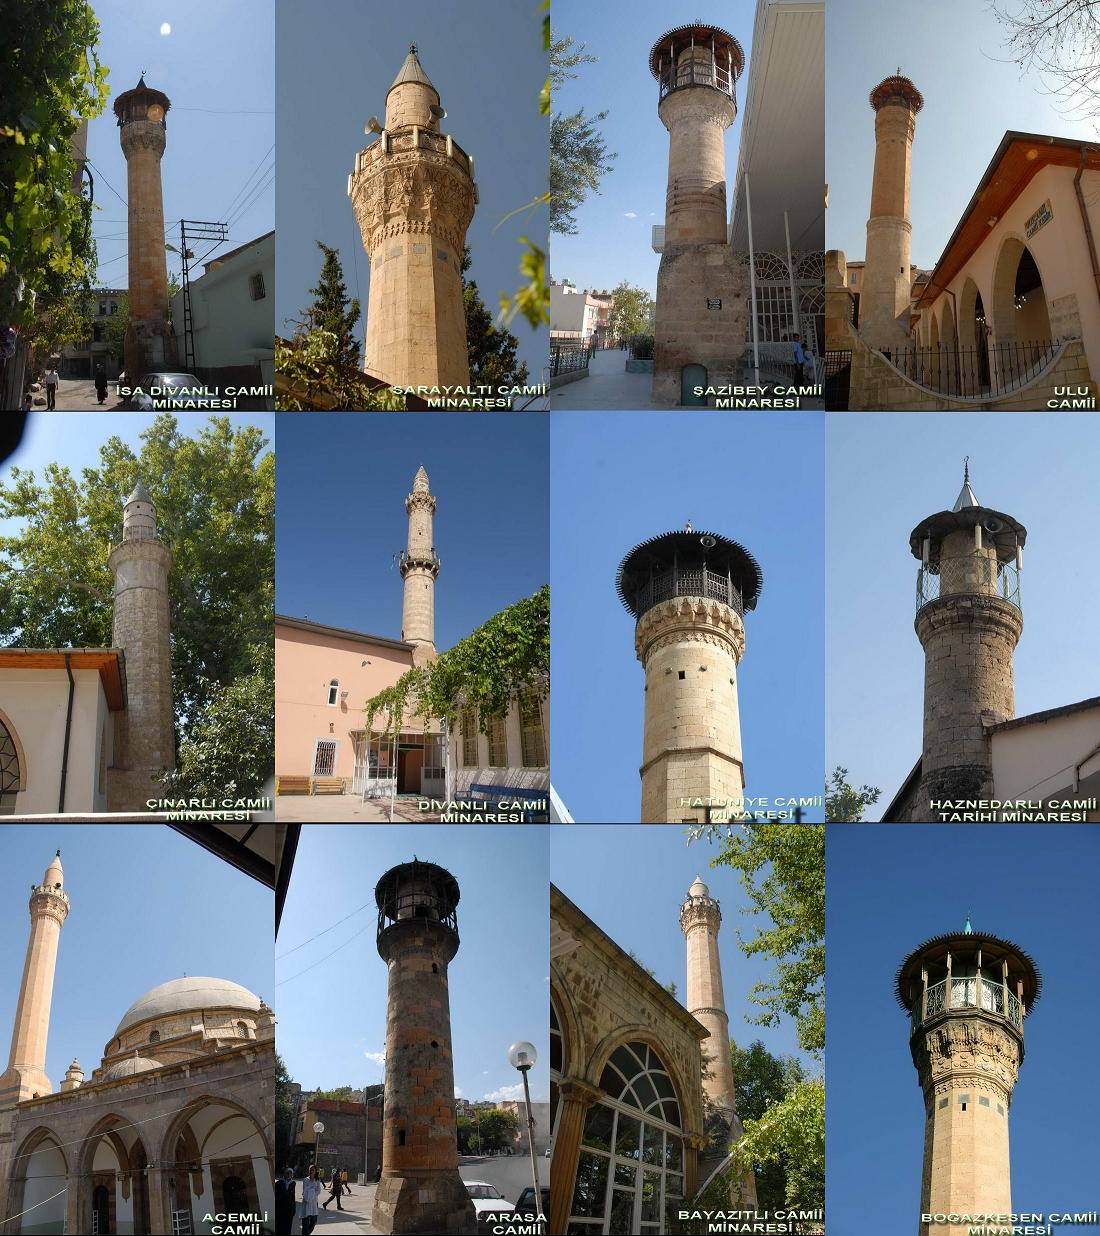 kahramanmaras mosques 1100 x 1236